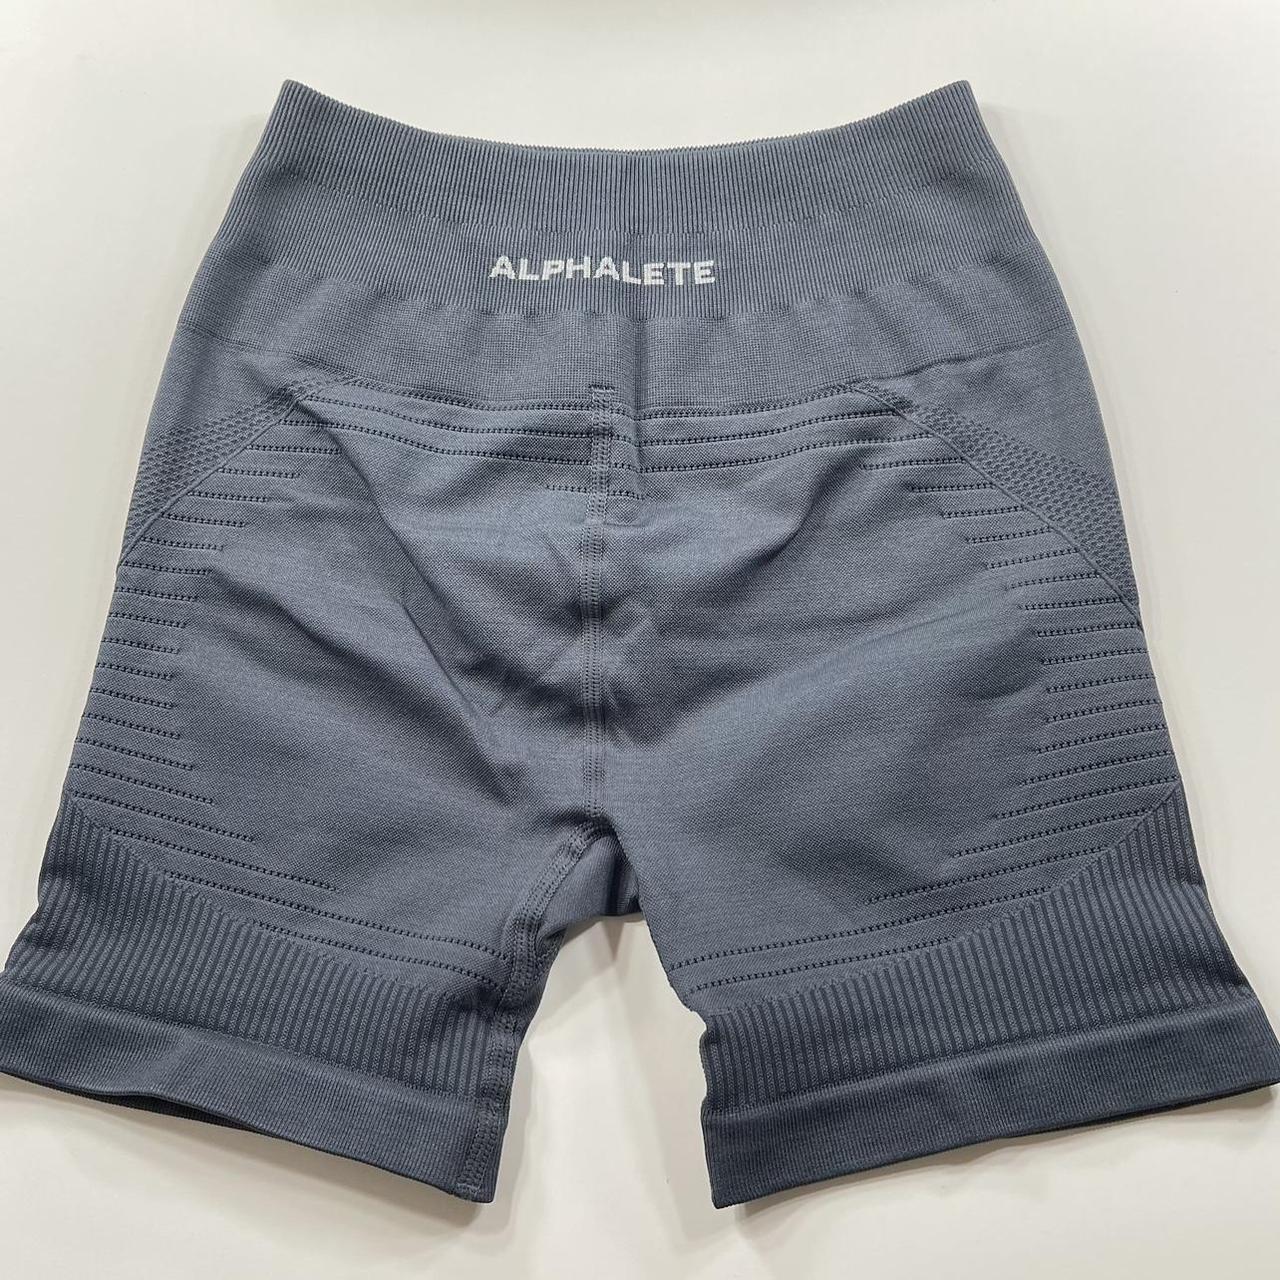 Alphalete Amplify leggings in charcoal size xxs. - Depop